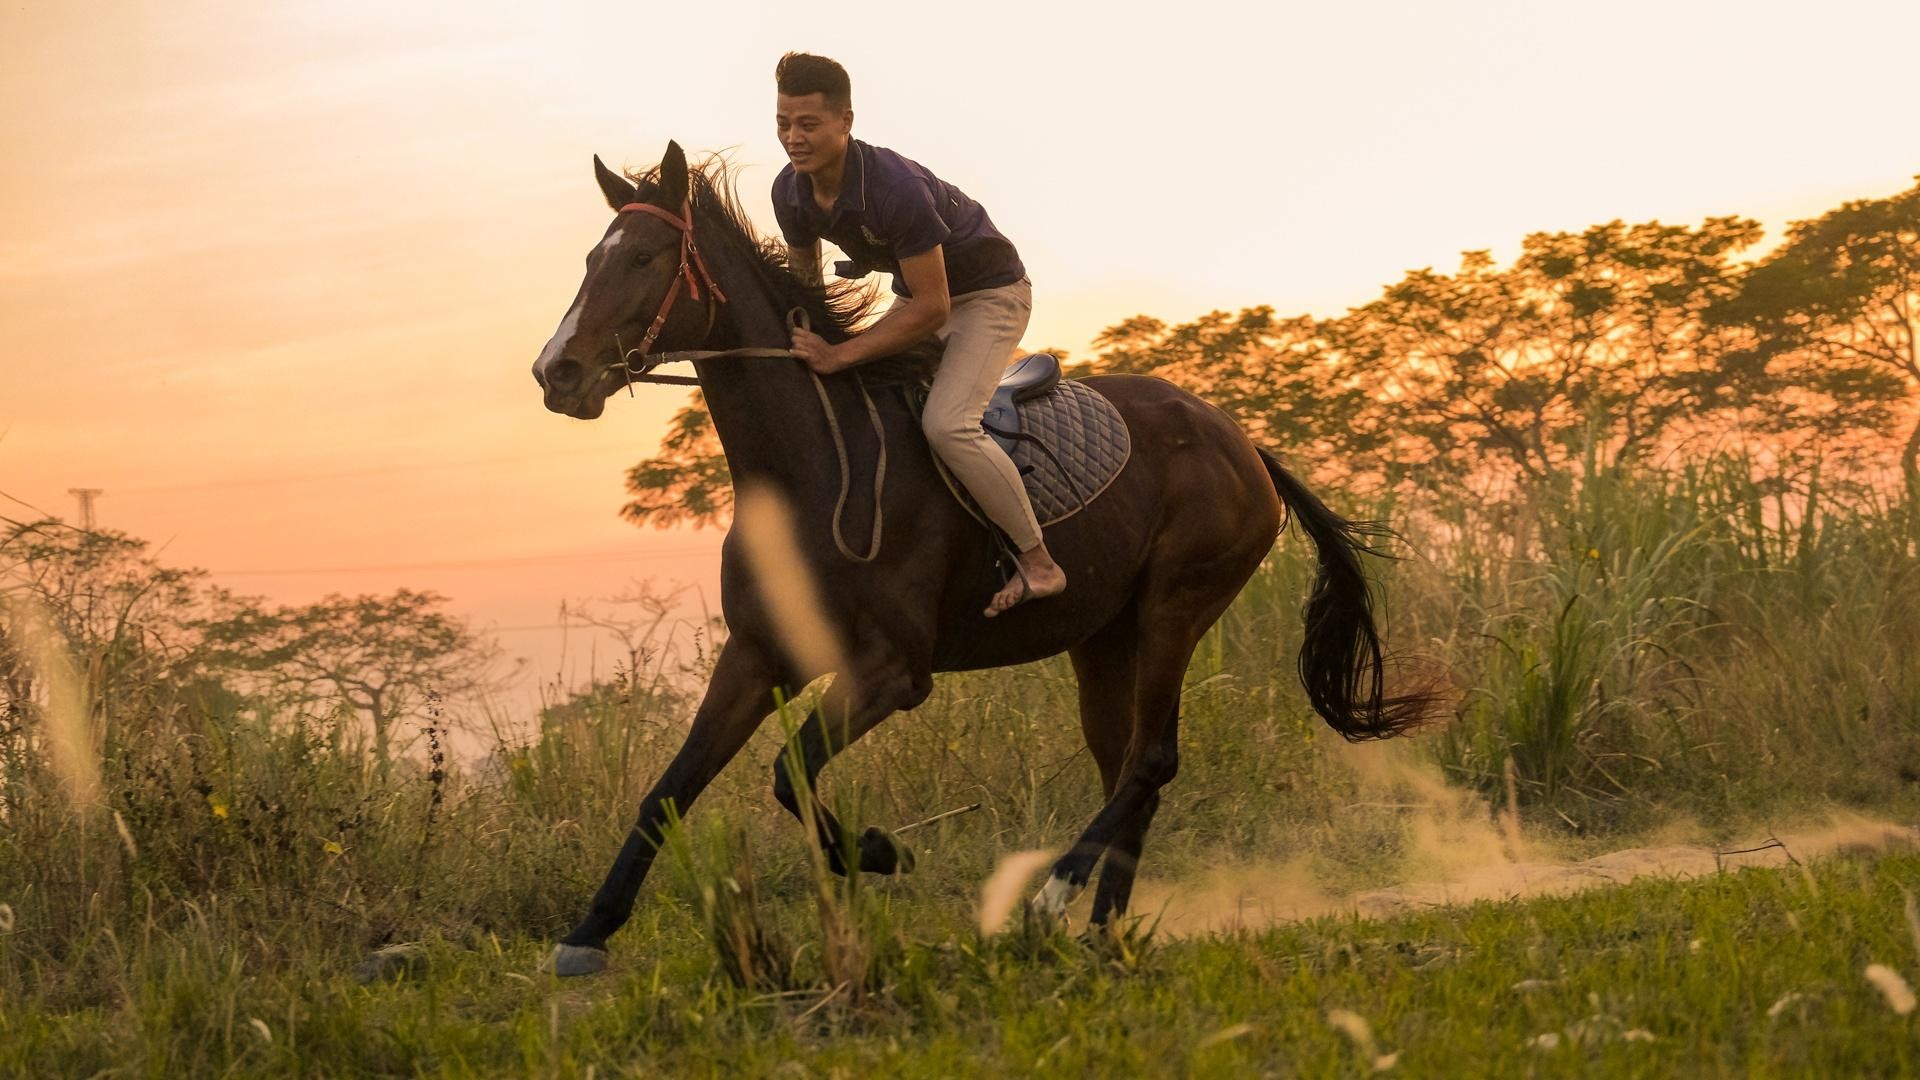 Huấn luyện viên dạy cưỡi ngựa theo phong cách châu Âu tại Hà Nội ảnh 23